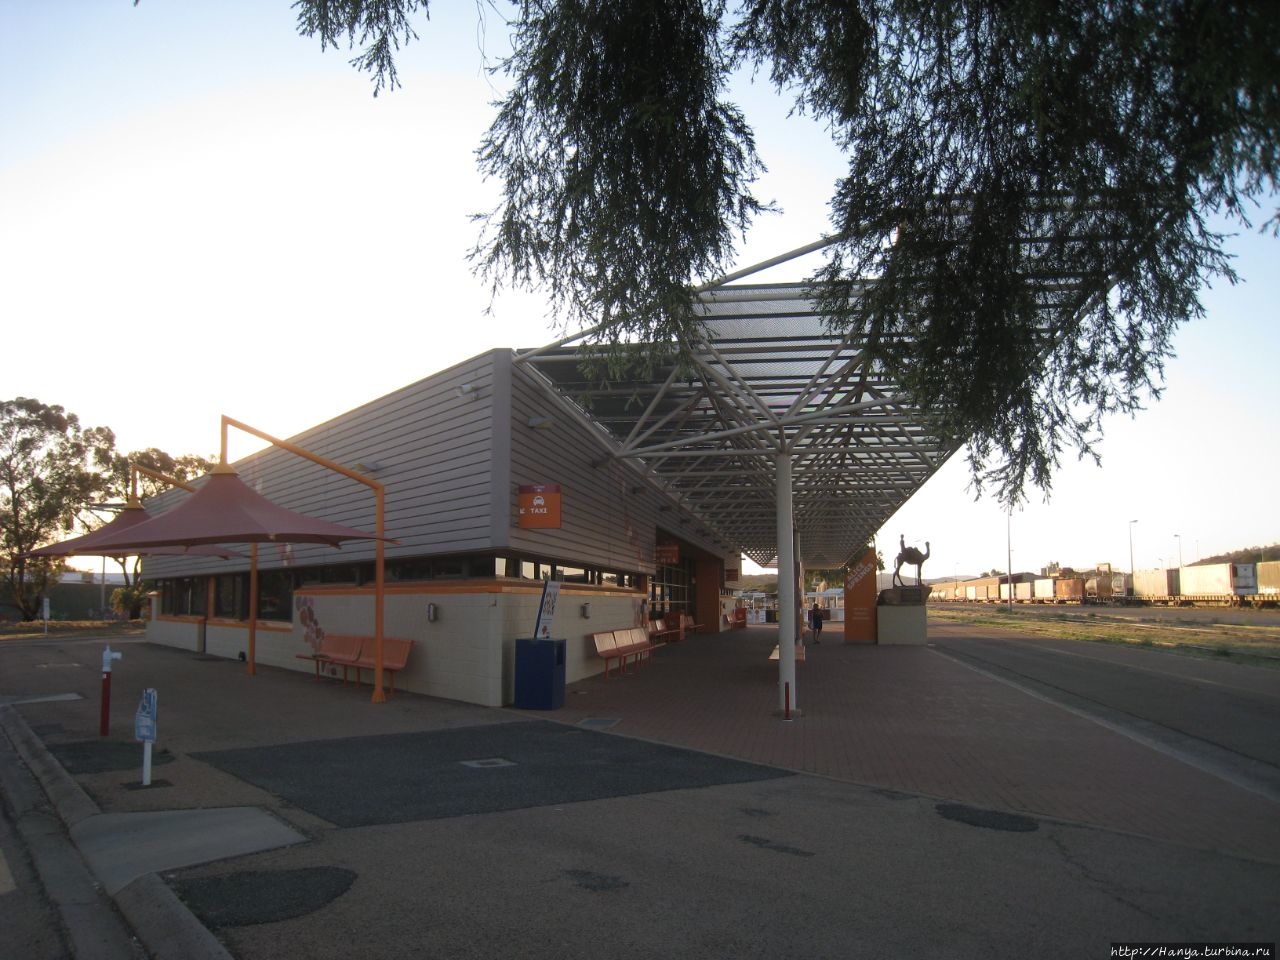 Ж.д. станция Алис-Спрингс Элис-Спрингс, Австралия